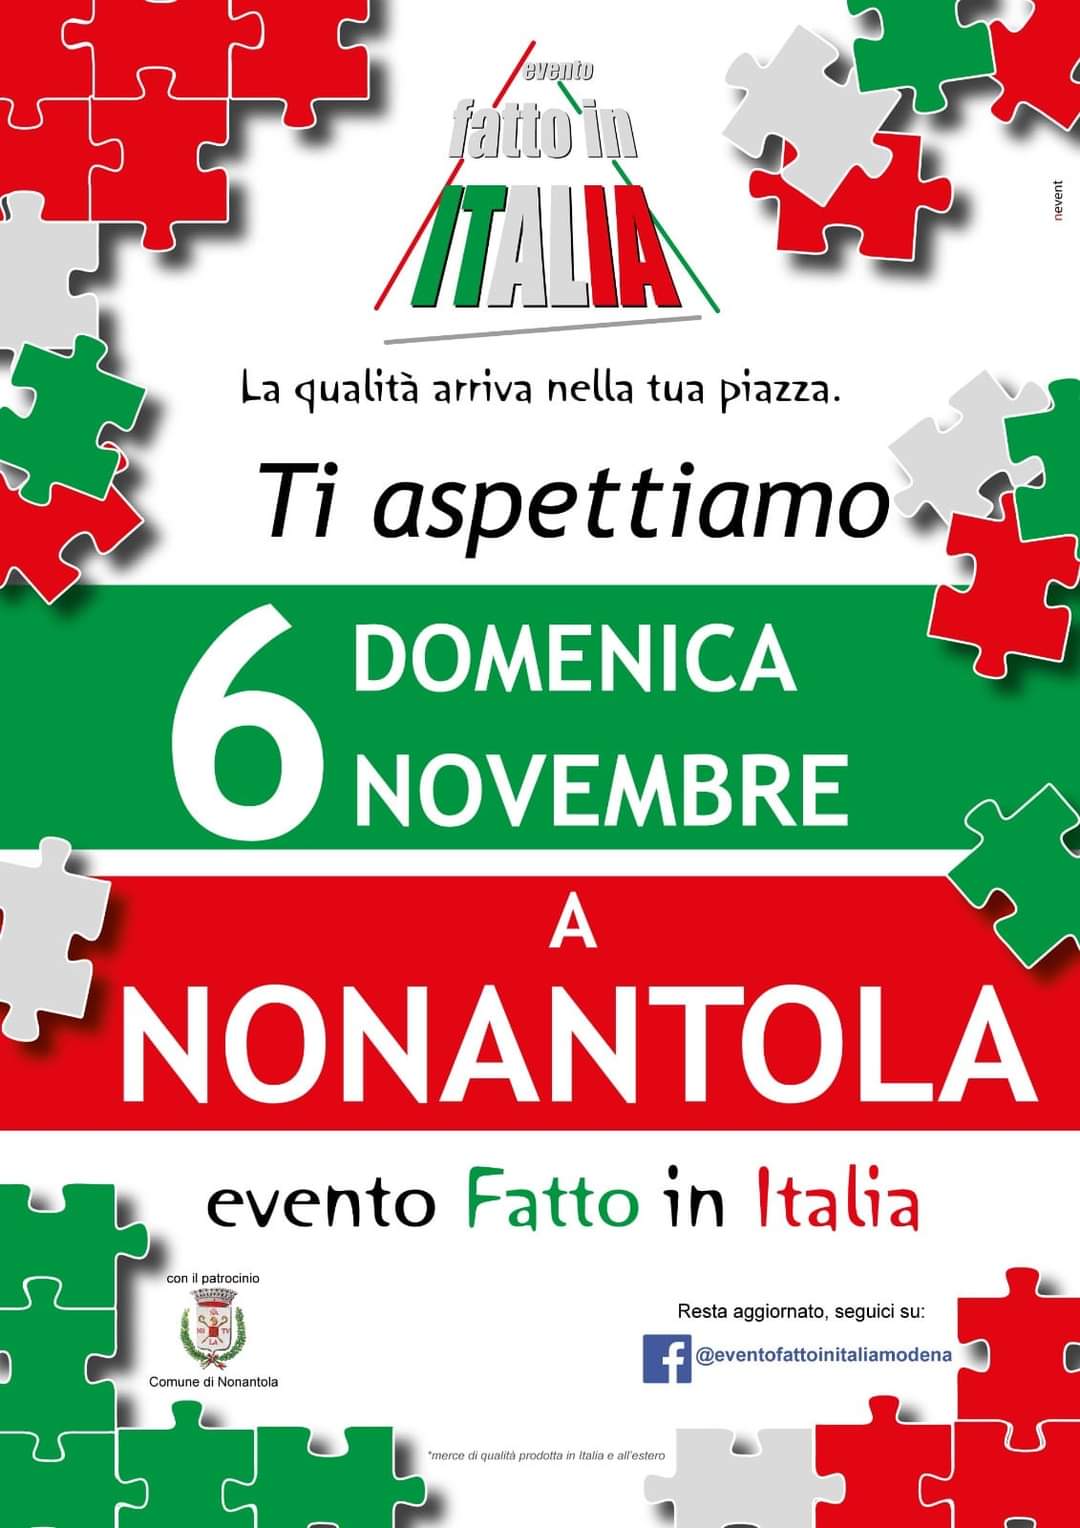 L'evento “Fatto in Italia” a Nonantola